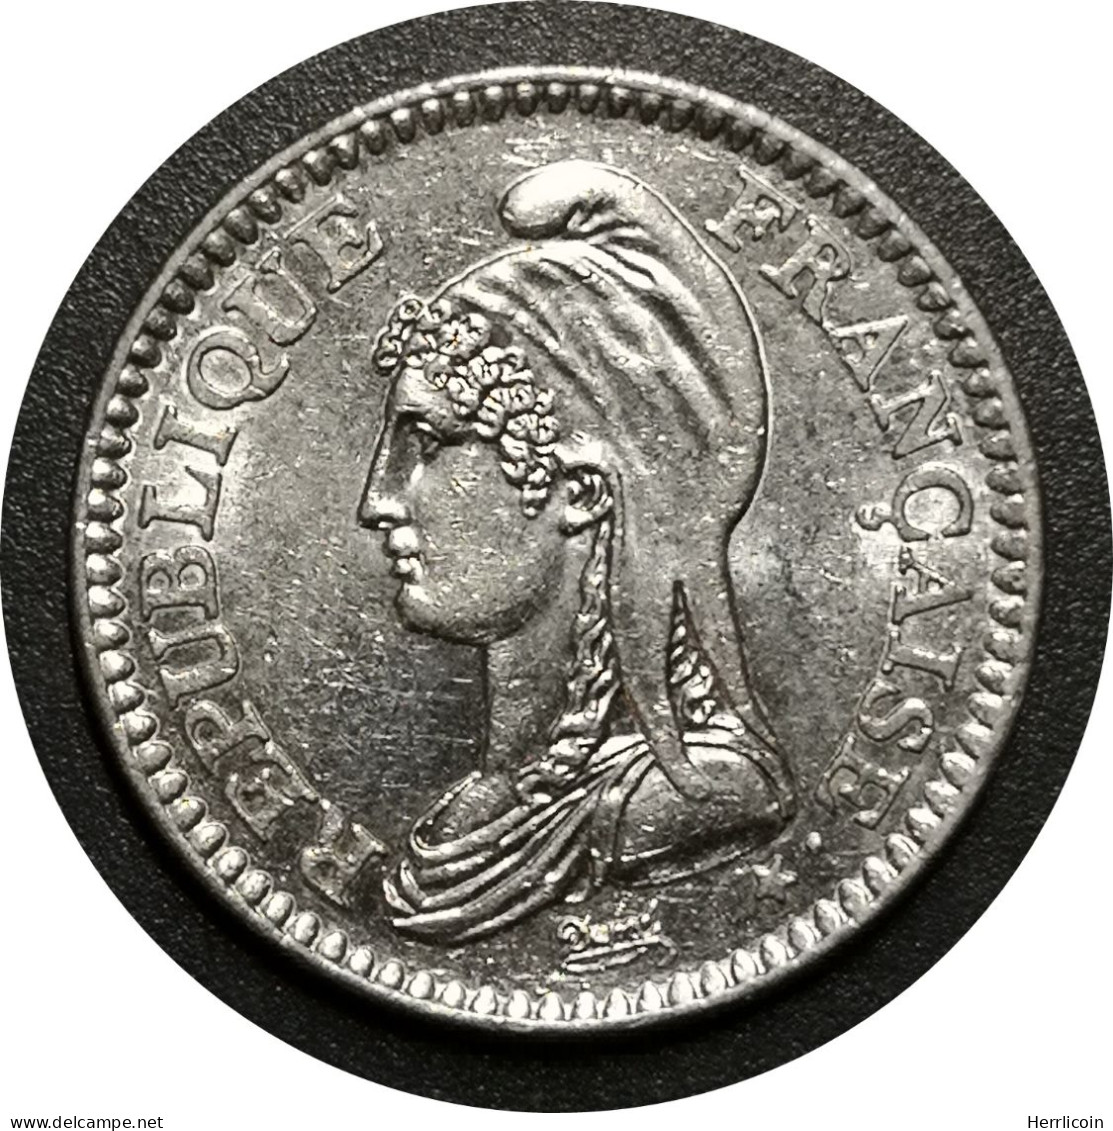 Monnaie France - 1992 - 1 Franc République Nickel - Gedenkmünzen